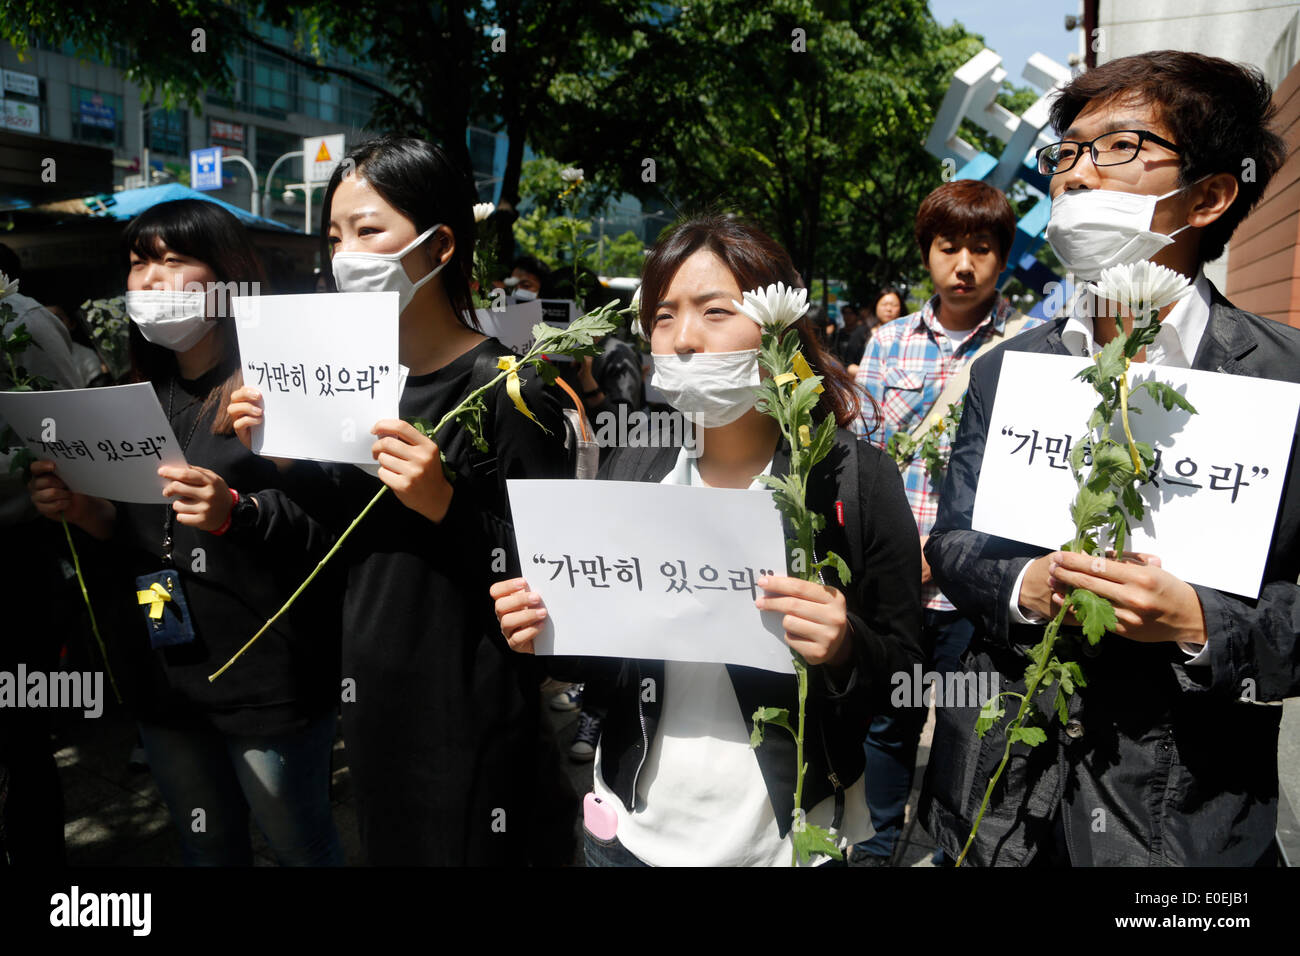 Seúl, Corea del Sur. 10 de mayo de 2014. Las personas tienen signos y flores durante su 'Stay' todavía marcha silenciosa contra lo que insisten, lax respuesta del Presidente Park Geun-hye el gobierno tras el ferry Sewol fue hundido en aguas de la isla de Jindo Sudoeste el 16 de abril de 2014, en la calle, Seúl, Corea del Sur, el sábado 10 de mayo de 2014. Los signos leer,'Stay' todavía, capitán de Sewol pasquinading, quien fue la difusión de un mensaje para que los pasajeros puedan esperar hasta nuevo aviso, cuando el ferry se hundía, según medios locales. Foto de stock